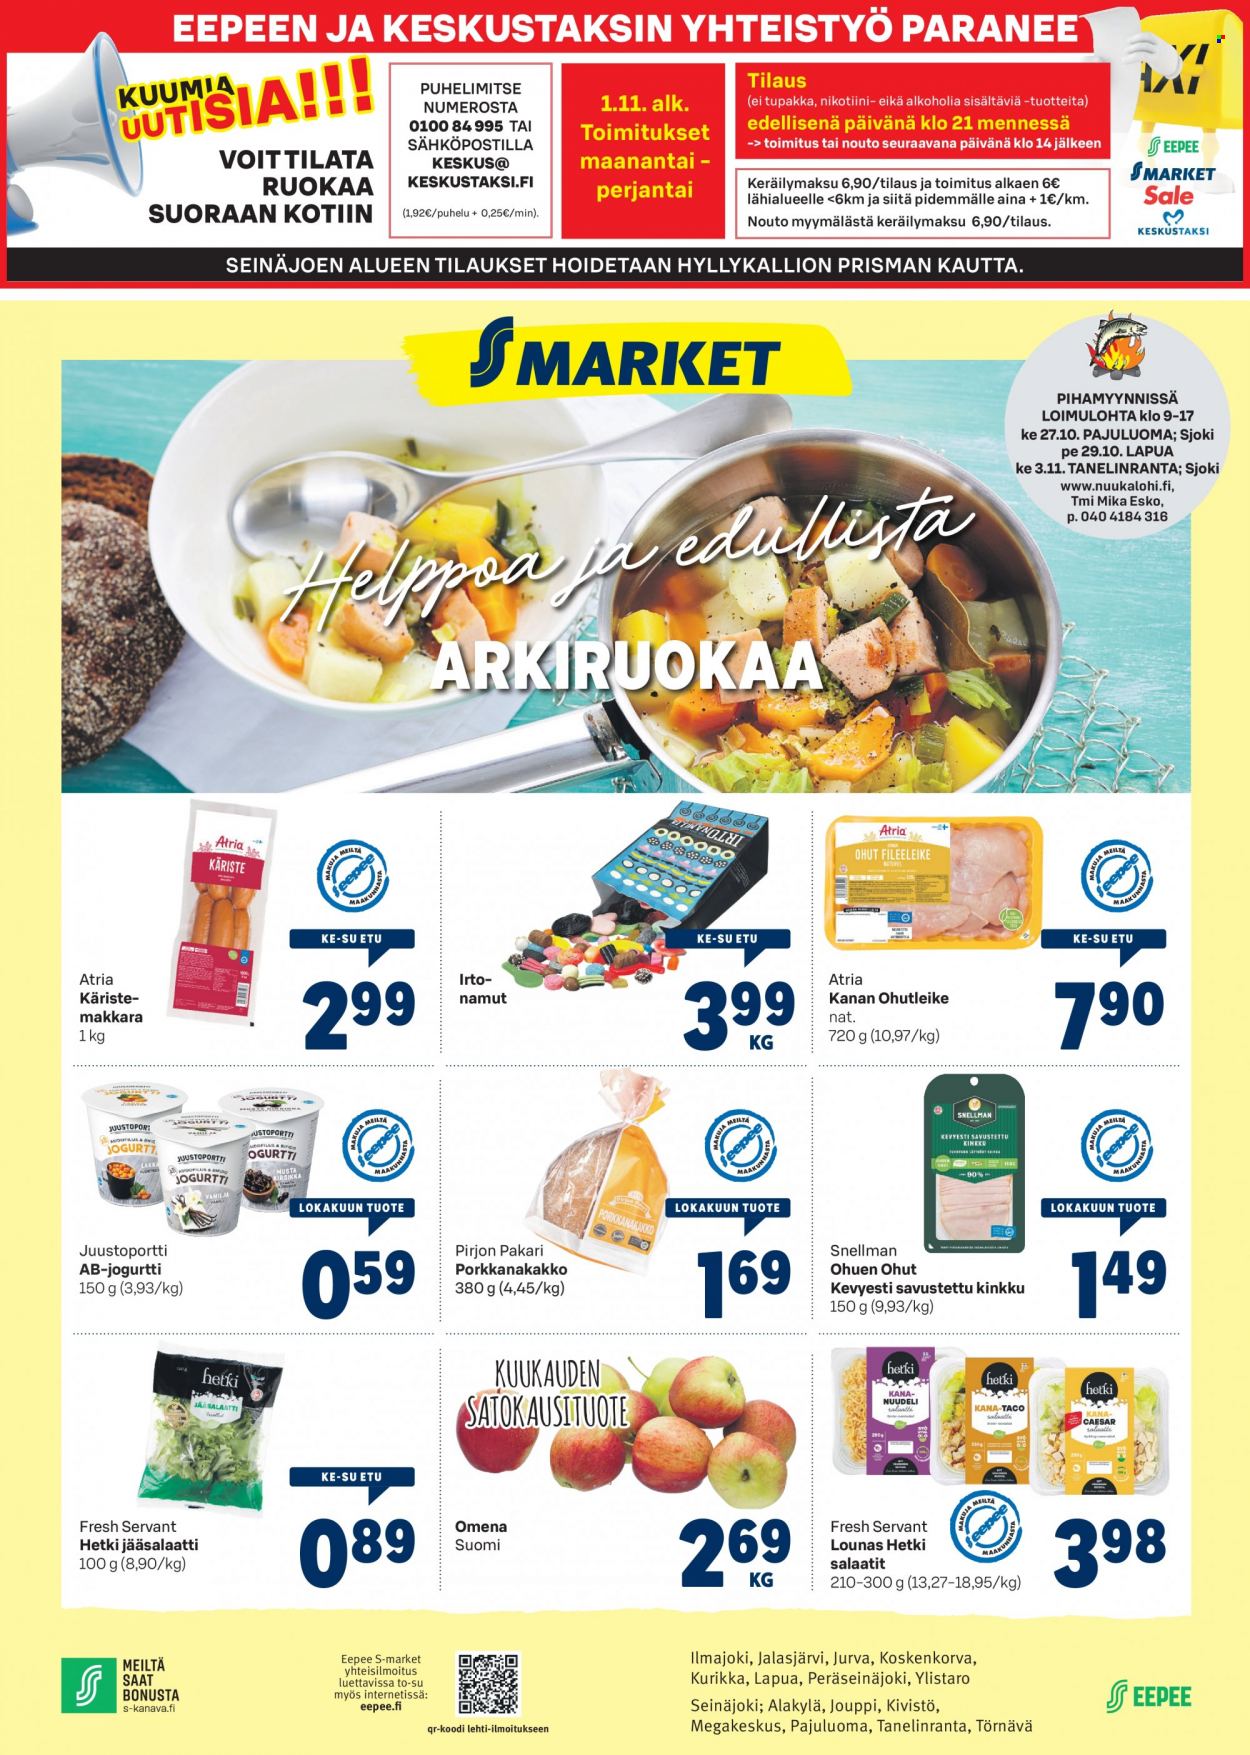 thumbnail - S-market tarjoukset  - 27.10.2021 - 31.10.2021 - Tarjoustuotteet - kanan, kinkku, Atria, jogurtit. Sivu 1.